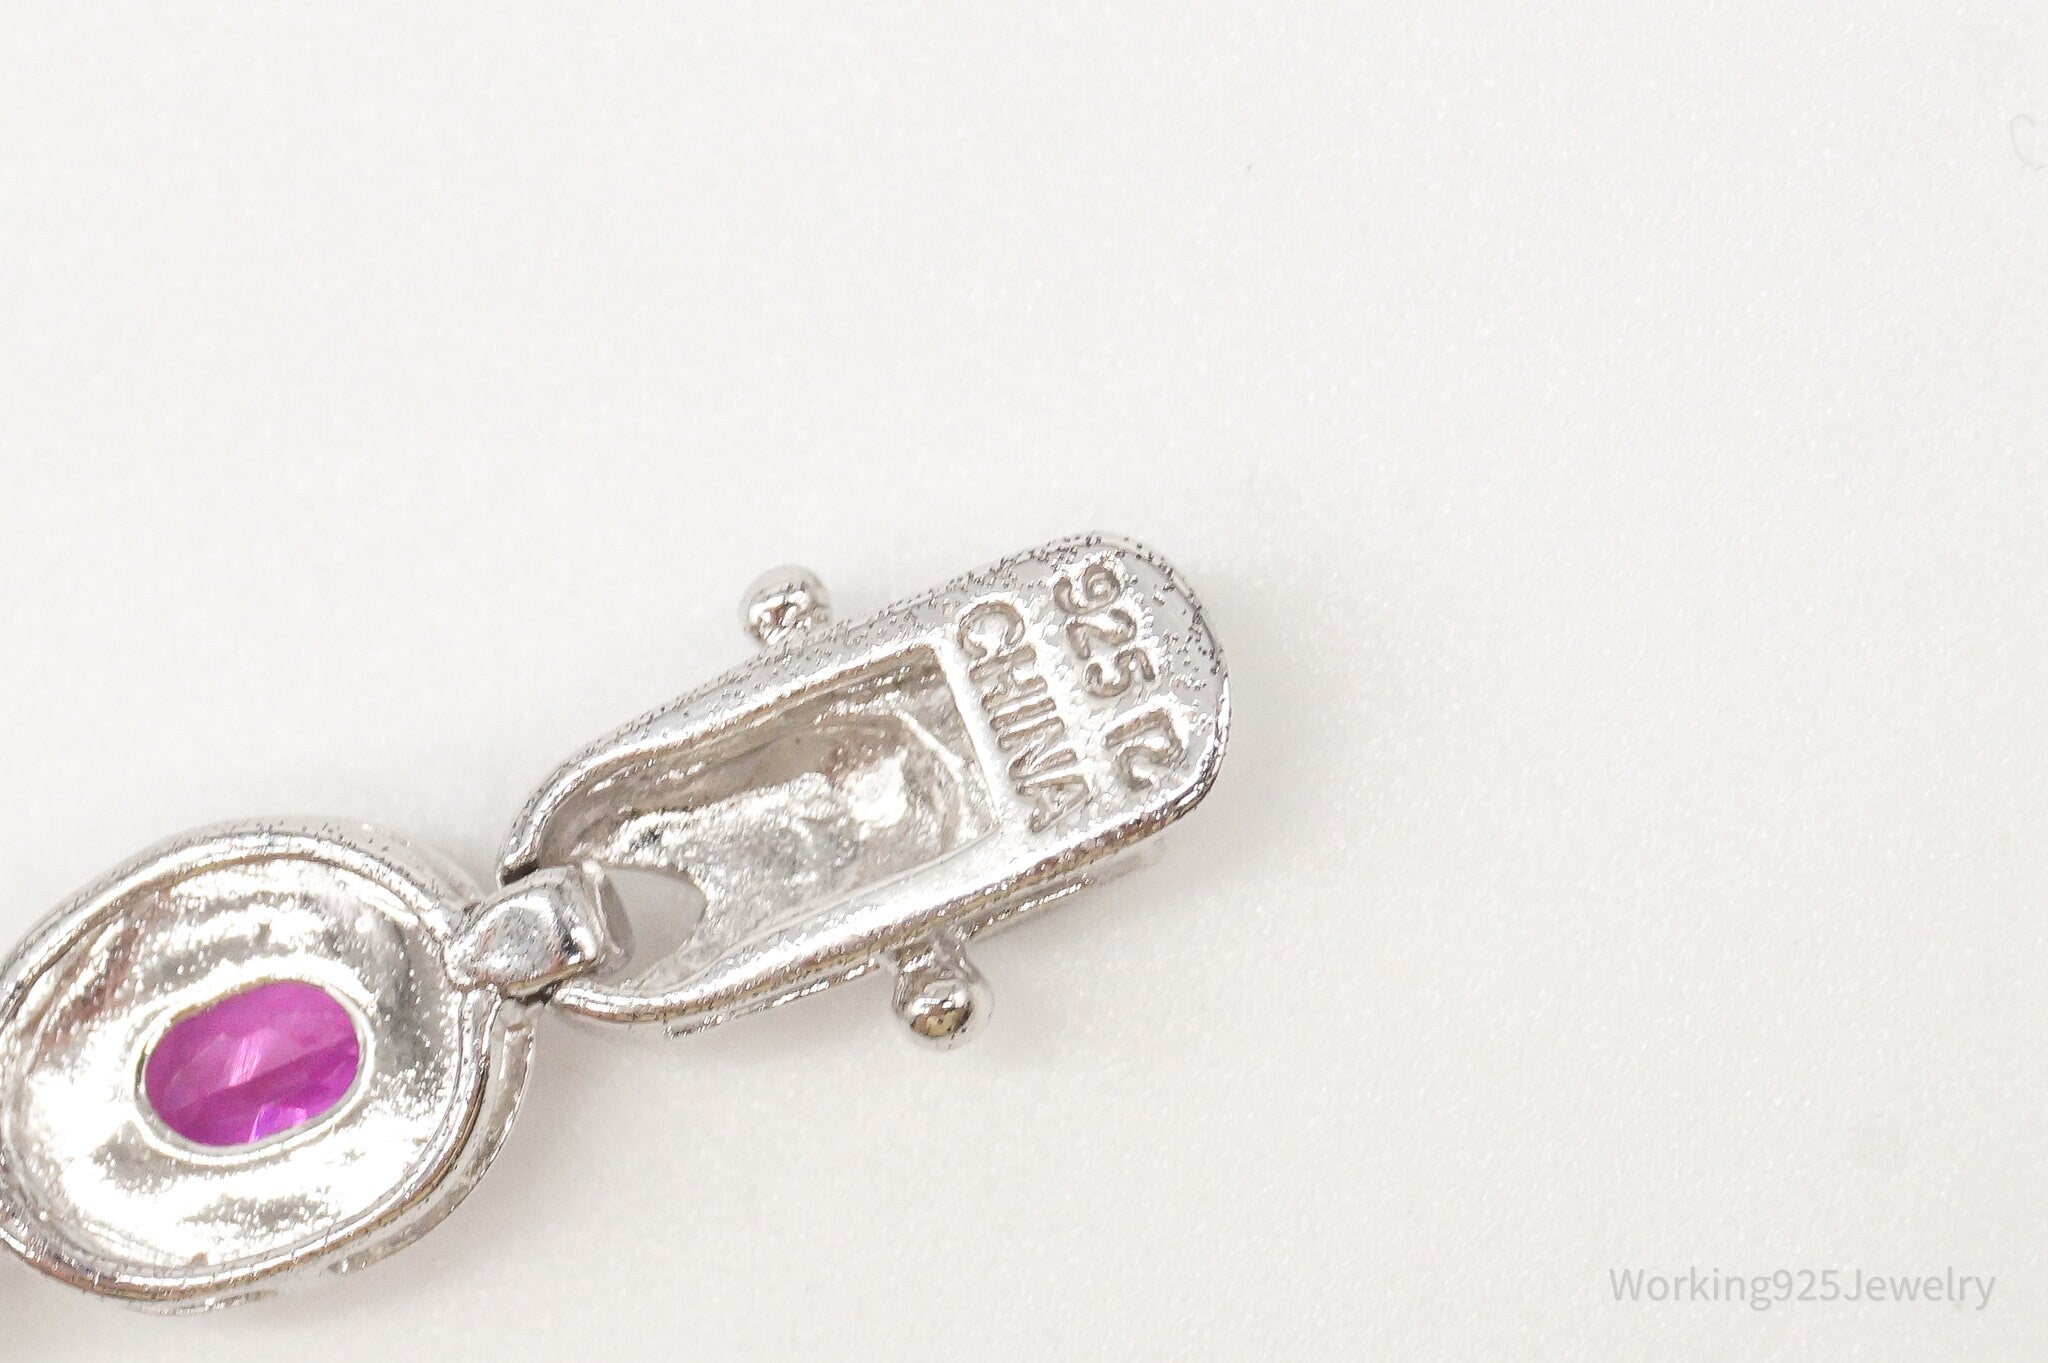 Designer Ross Simons Single Diamond Pink Topaz Sterling Silver Bracelet